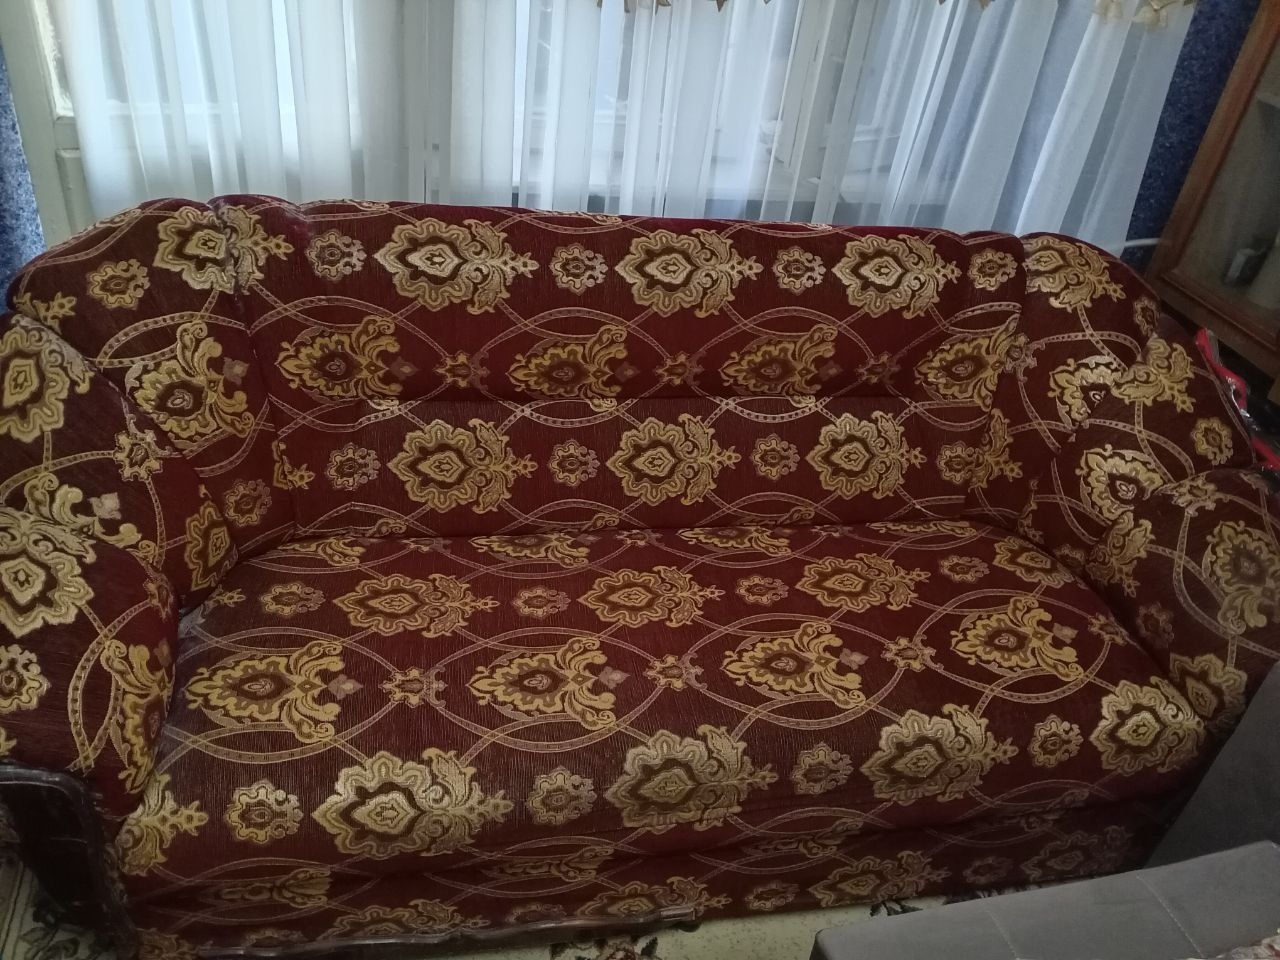 продается диван с креслами